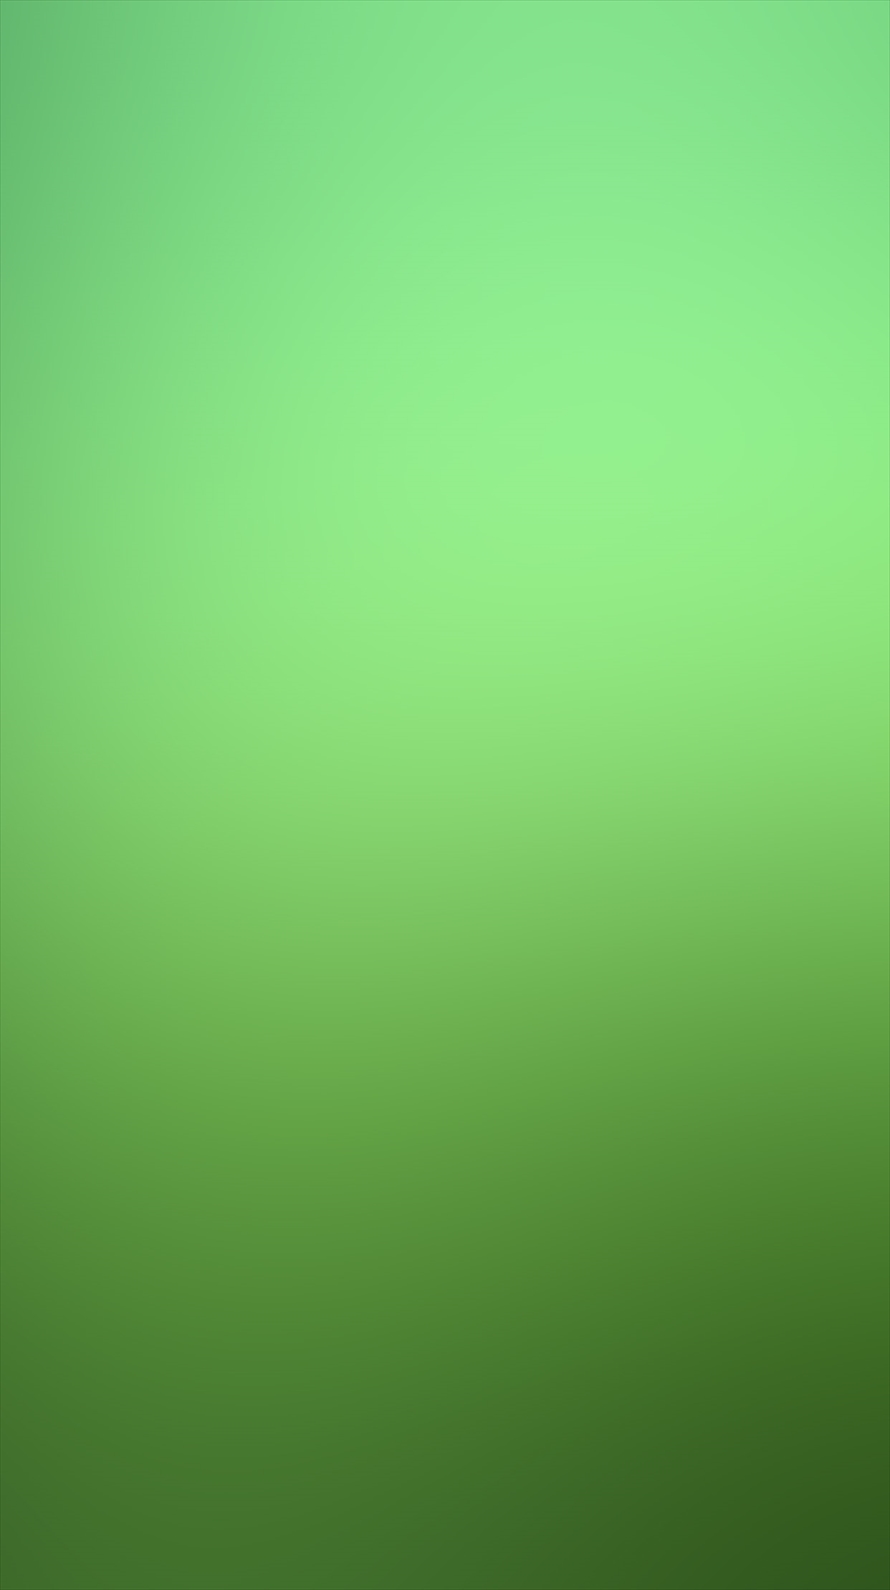 シンプルな緑のグラデーション Iphone6壁紙 Wallpaperbox